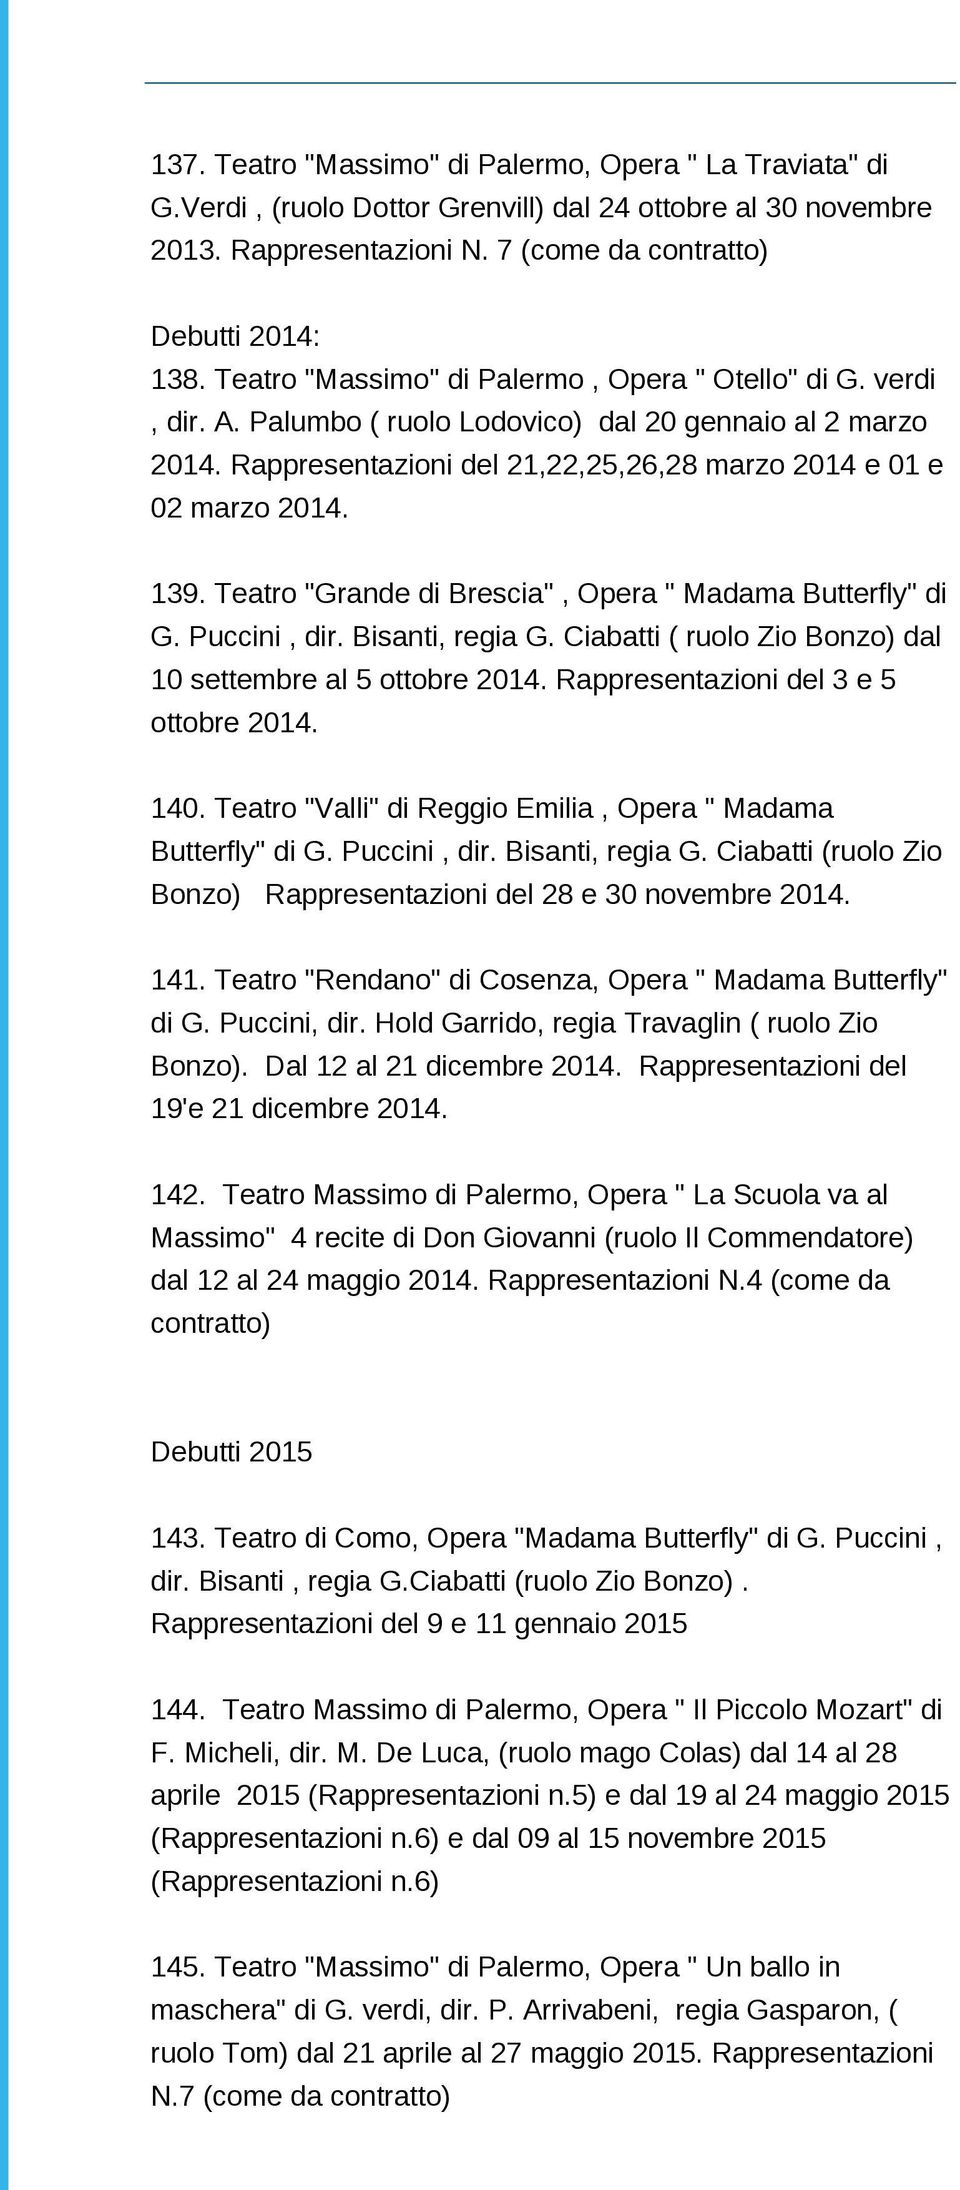 Teatro "Grande di Brescia", Opera " Madama Butterfly" di G. Puccini, dir. Bisanti, regia G. Ciabatti ( ruolo Zio Bonzo) dal 10 settembre al 5 ottobre 2014. Rappresentazioni del 3 e 5 ottobre 2014.